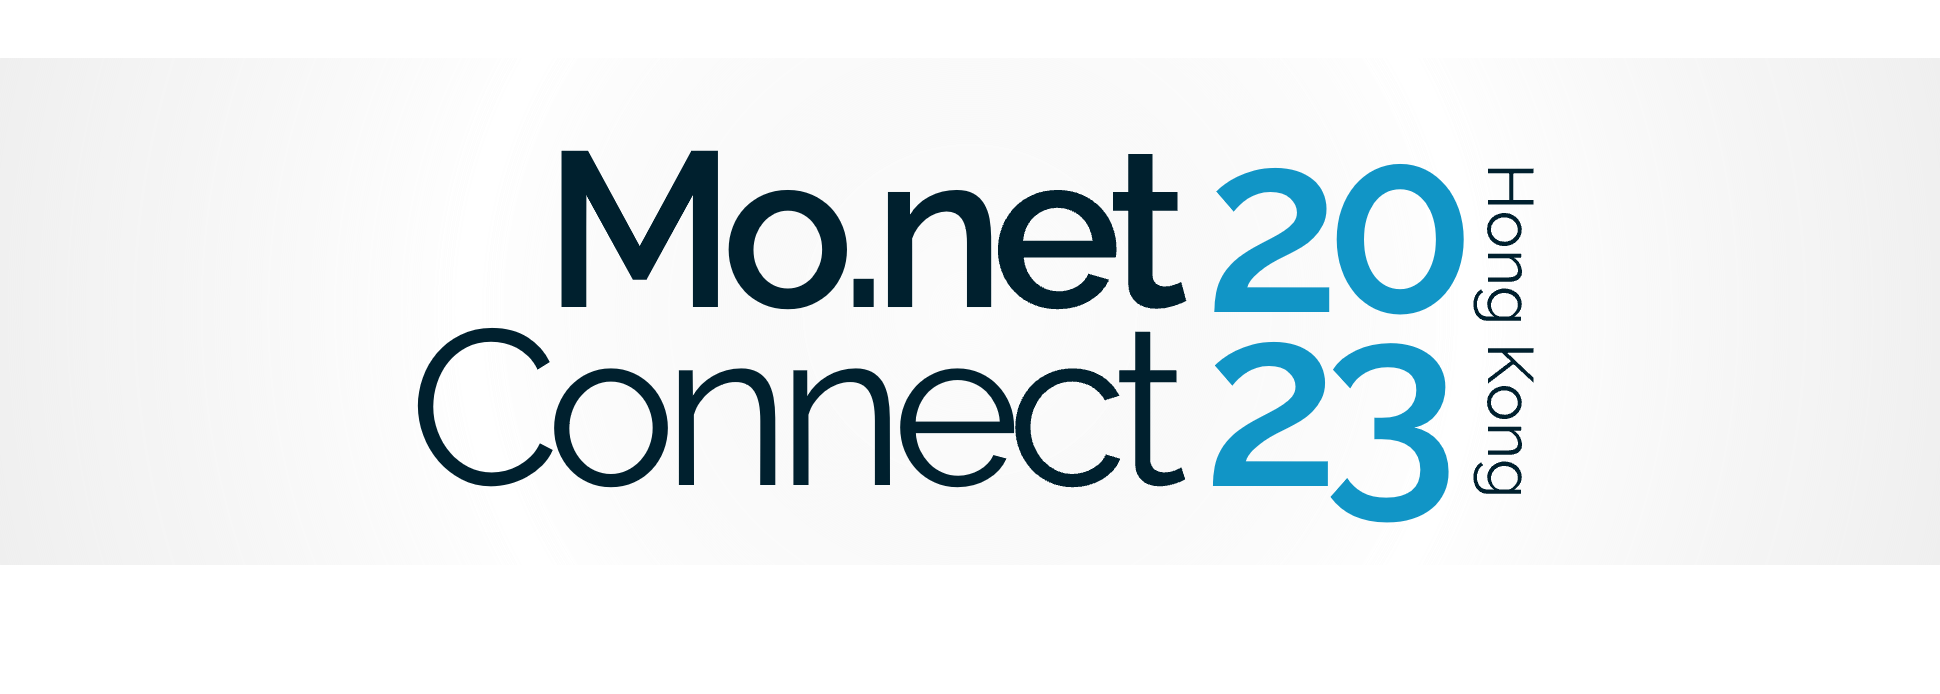 Monet Connect Hong Kong 2022 Banner